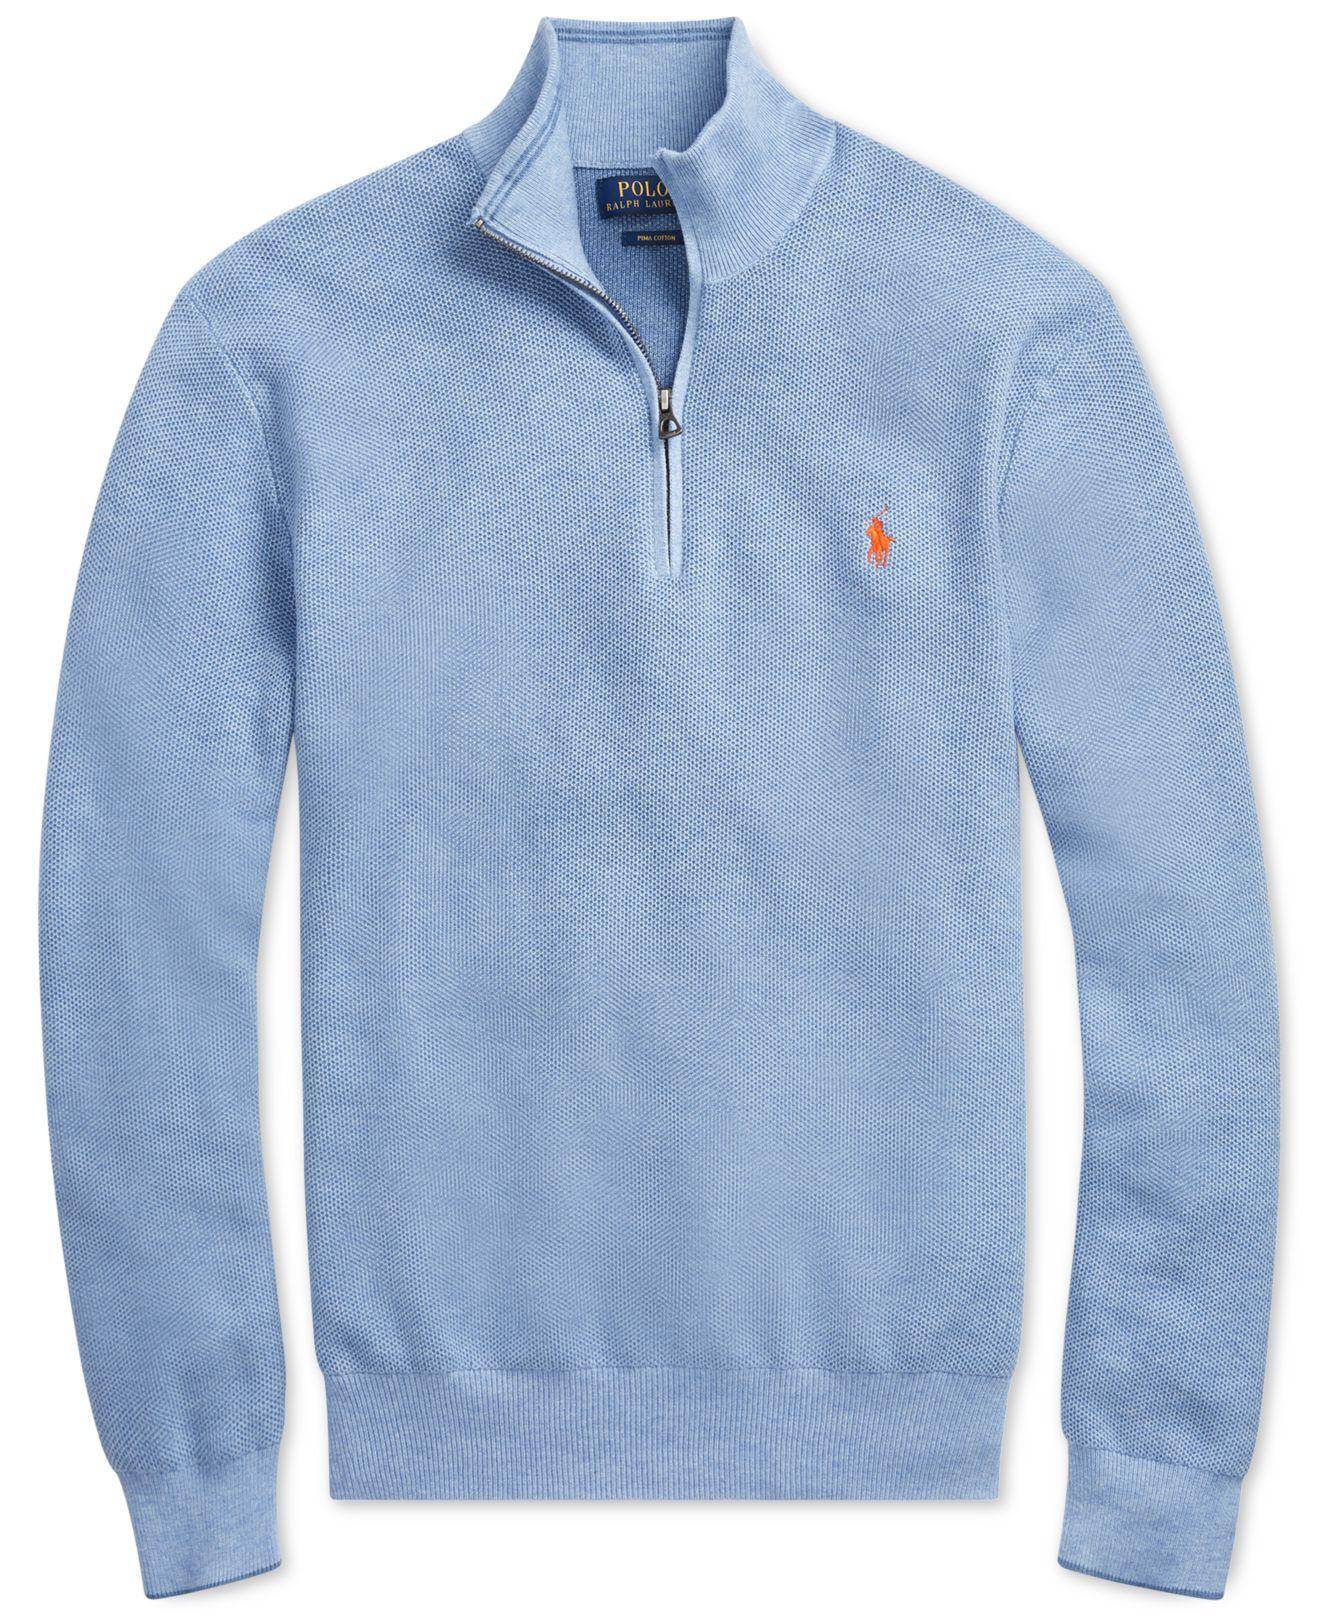 Polo Ralph Lauren Cotton Mesh Half-zip Sweater in Blue for Men - Lyst